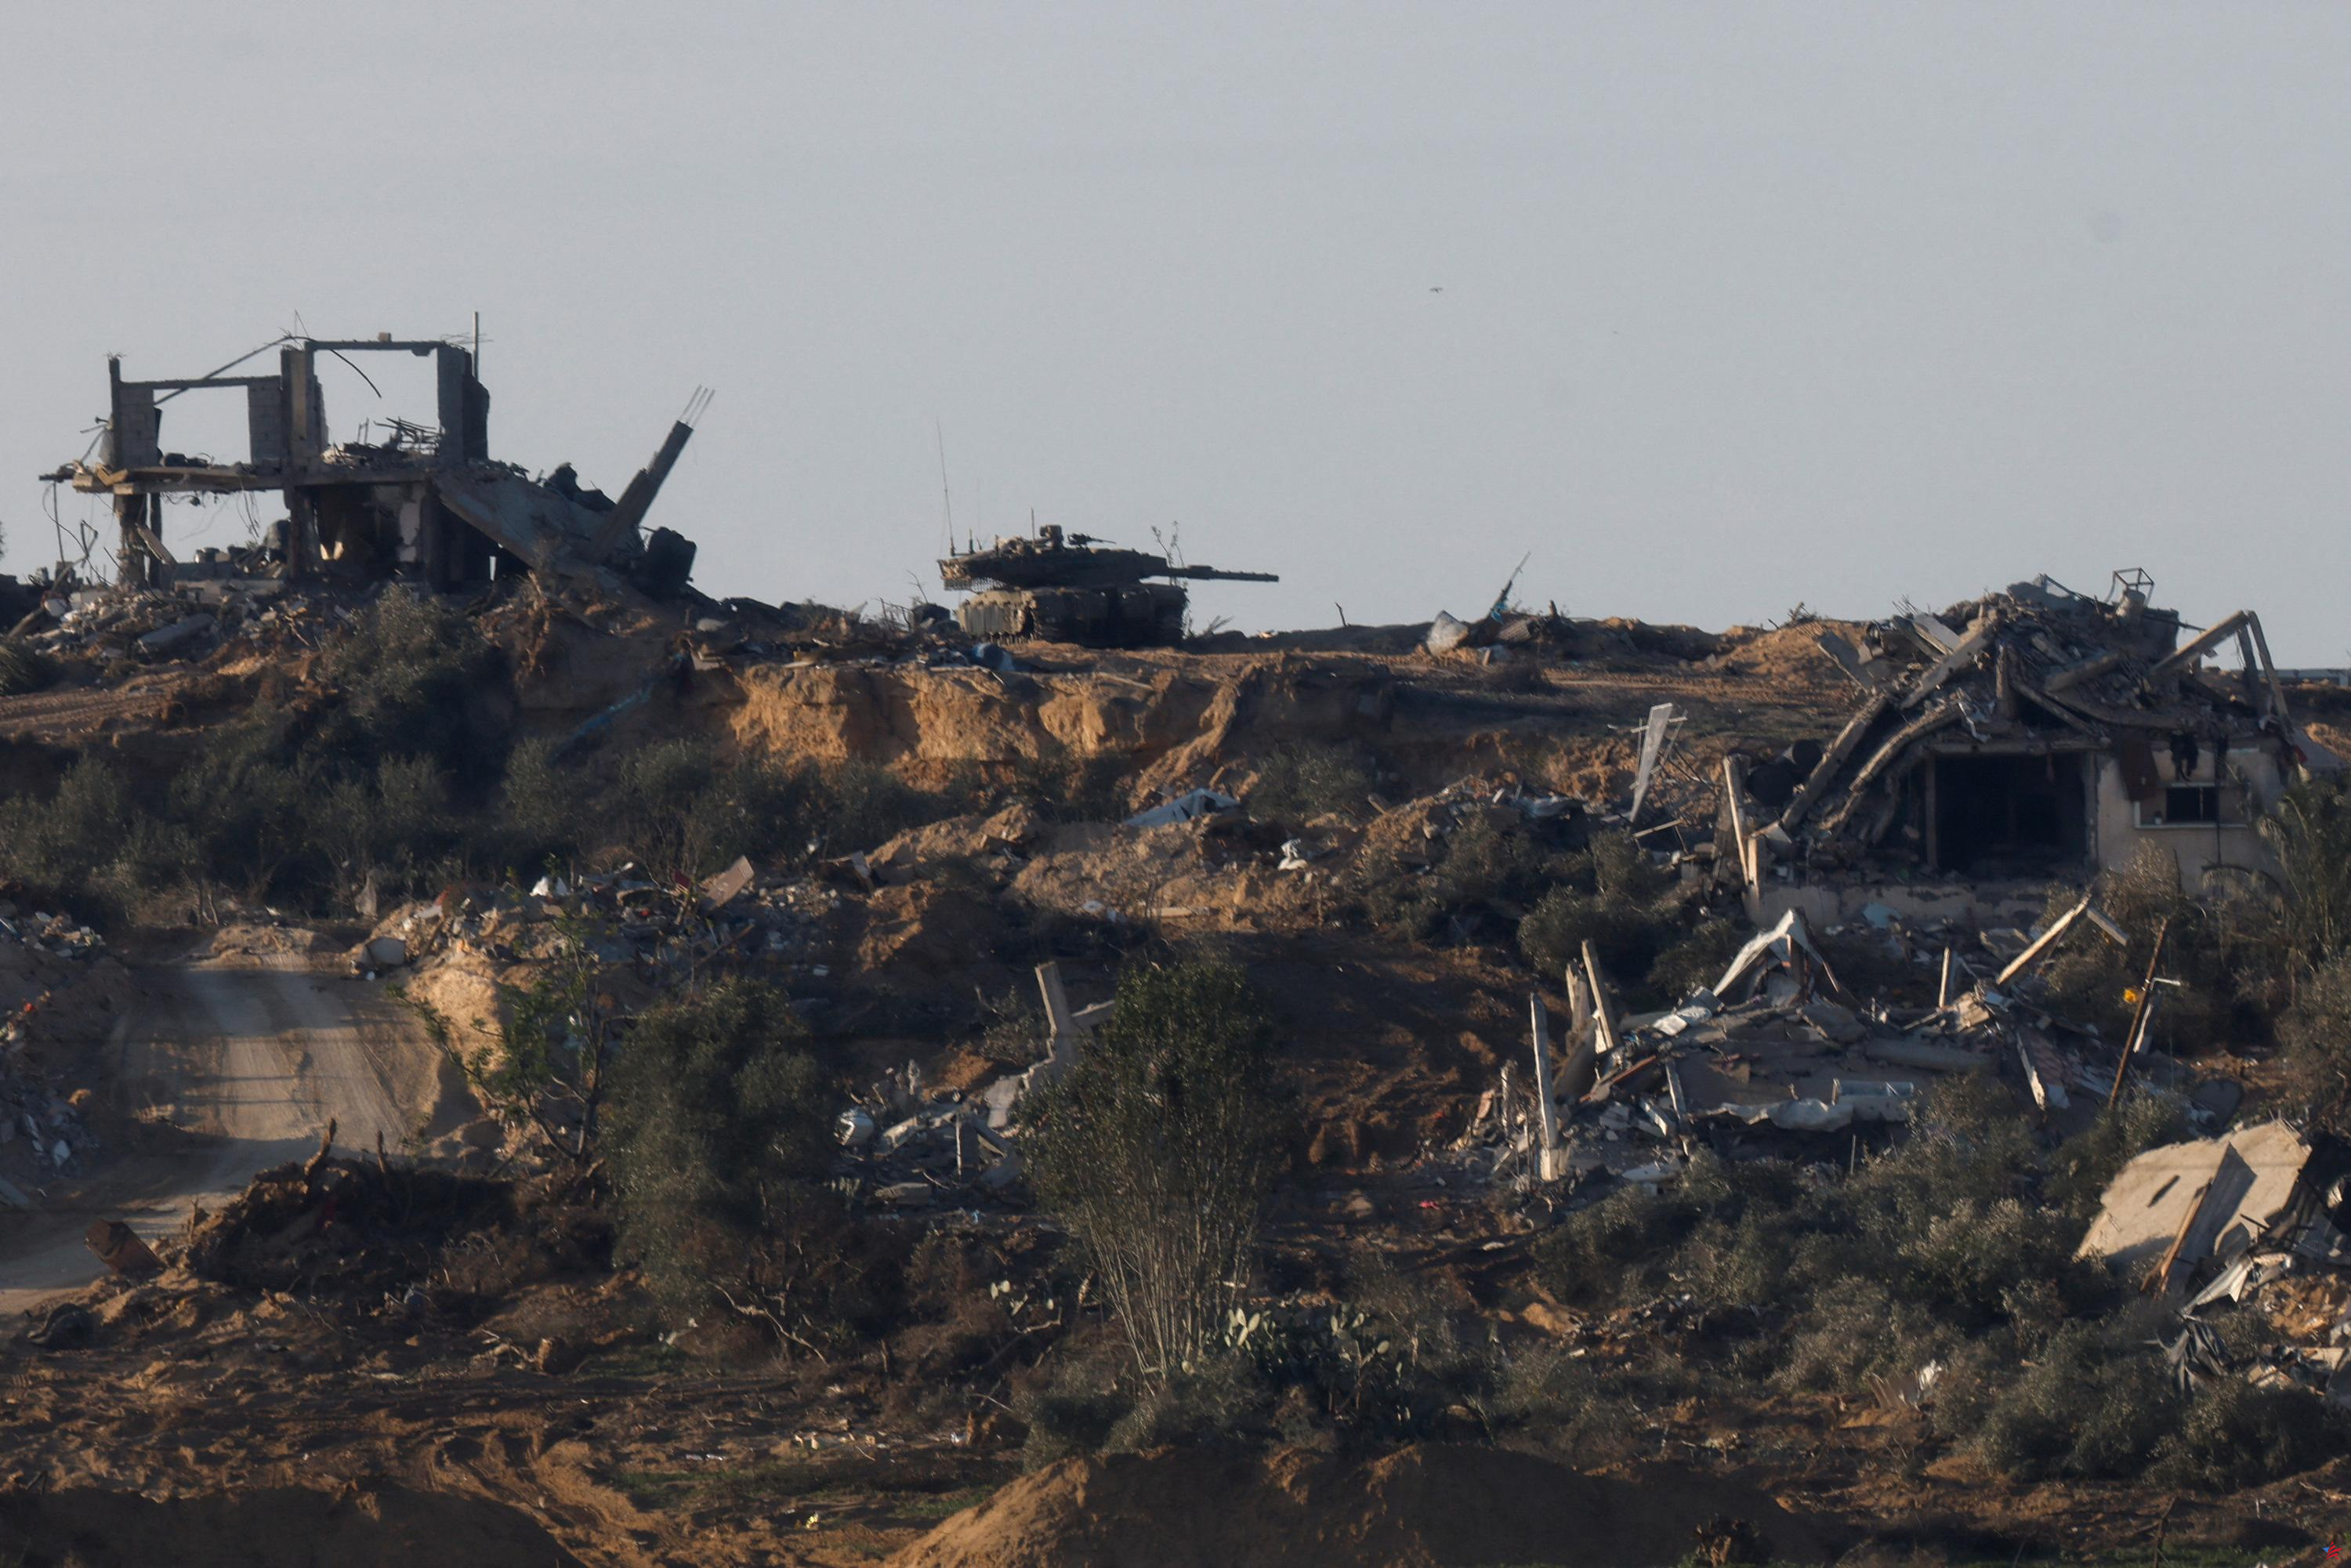 Guerra entre Israel y Hamas: Gaza “simplemente se ha vuelto inhabitable”, dice el coordinador humanitario de la ONU